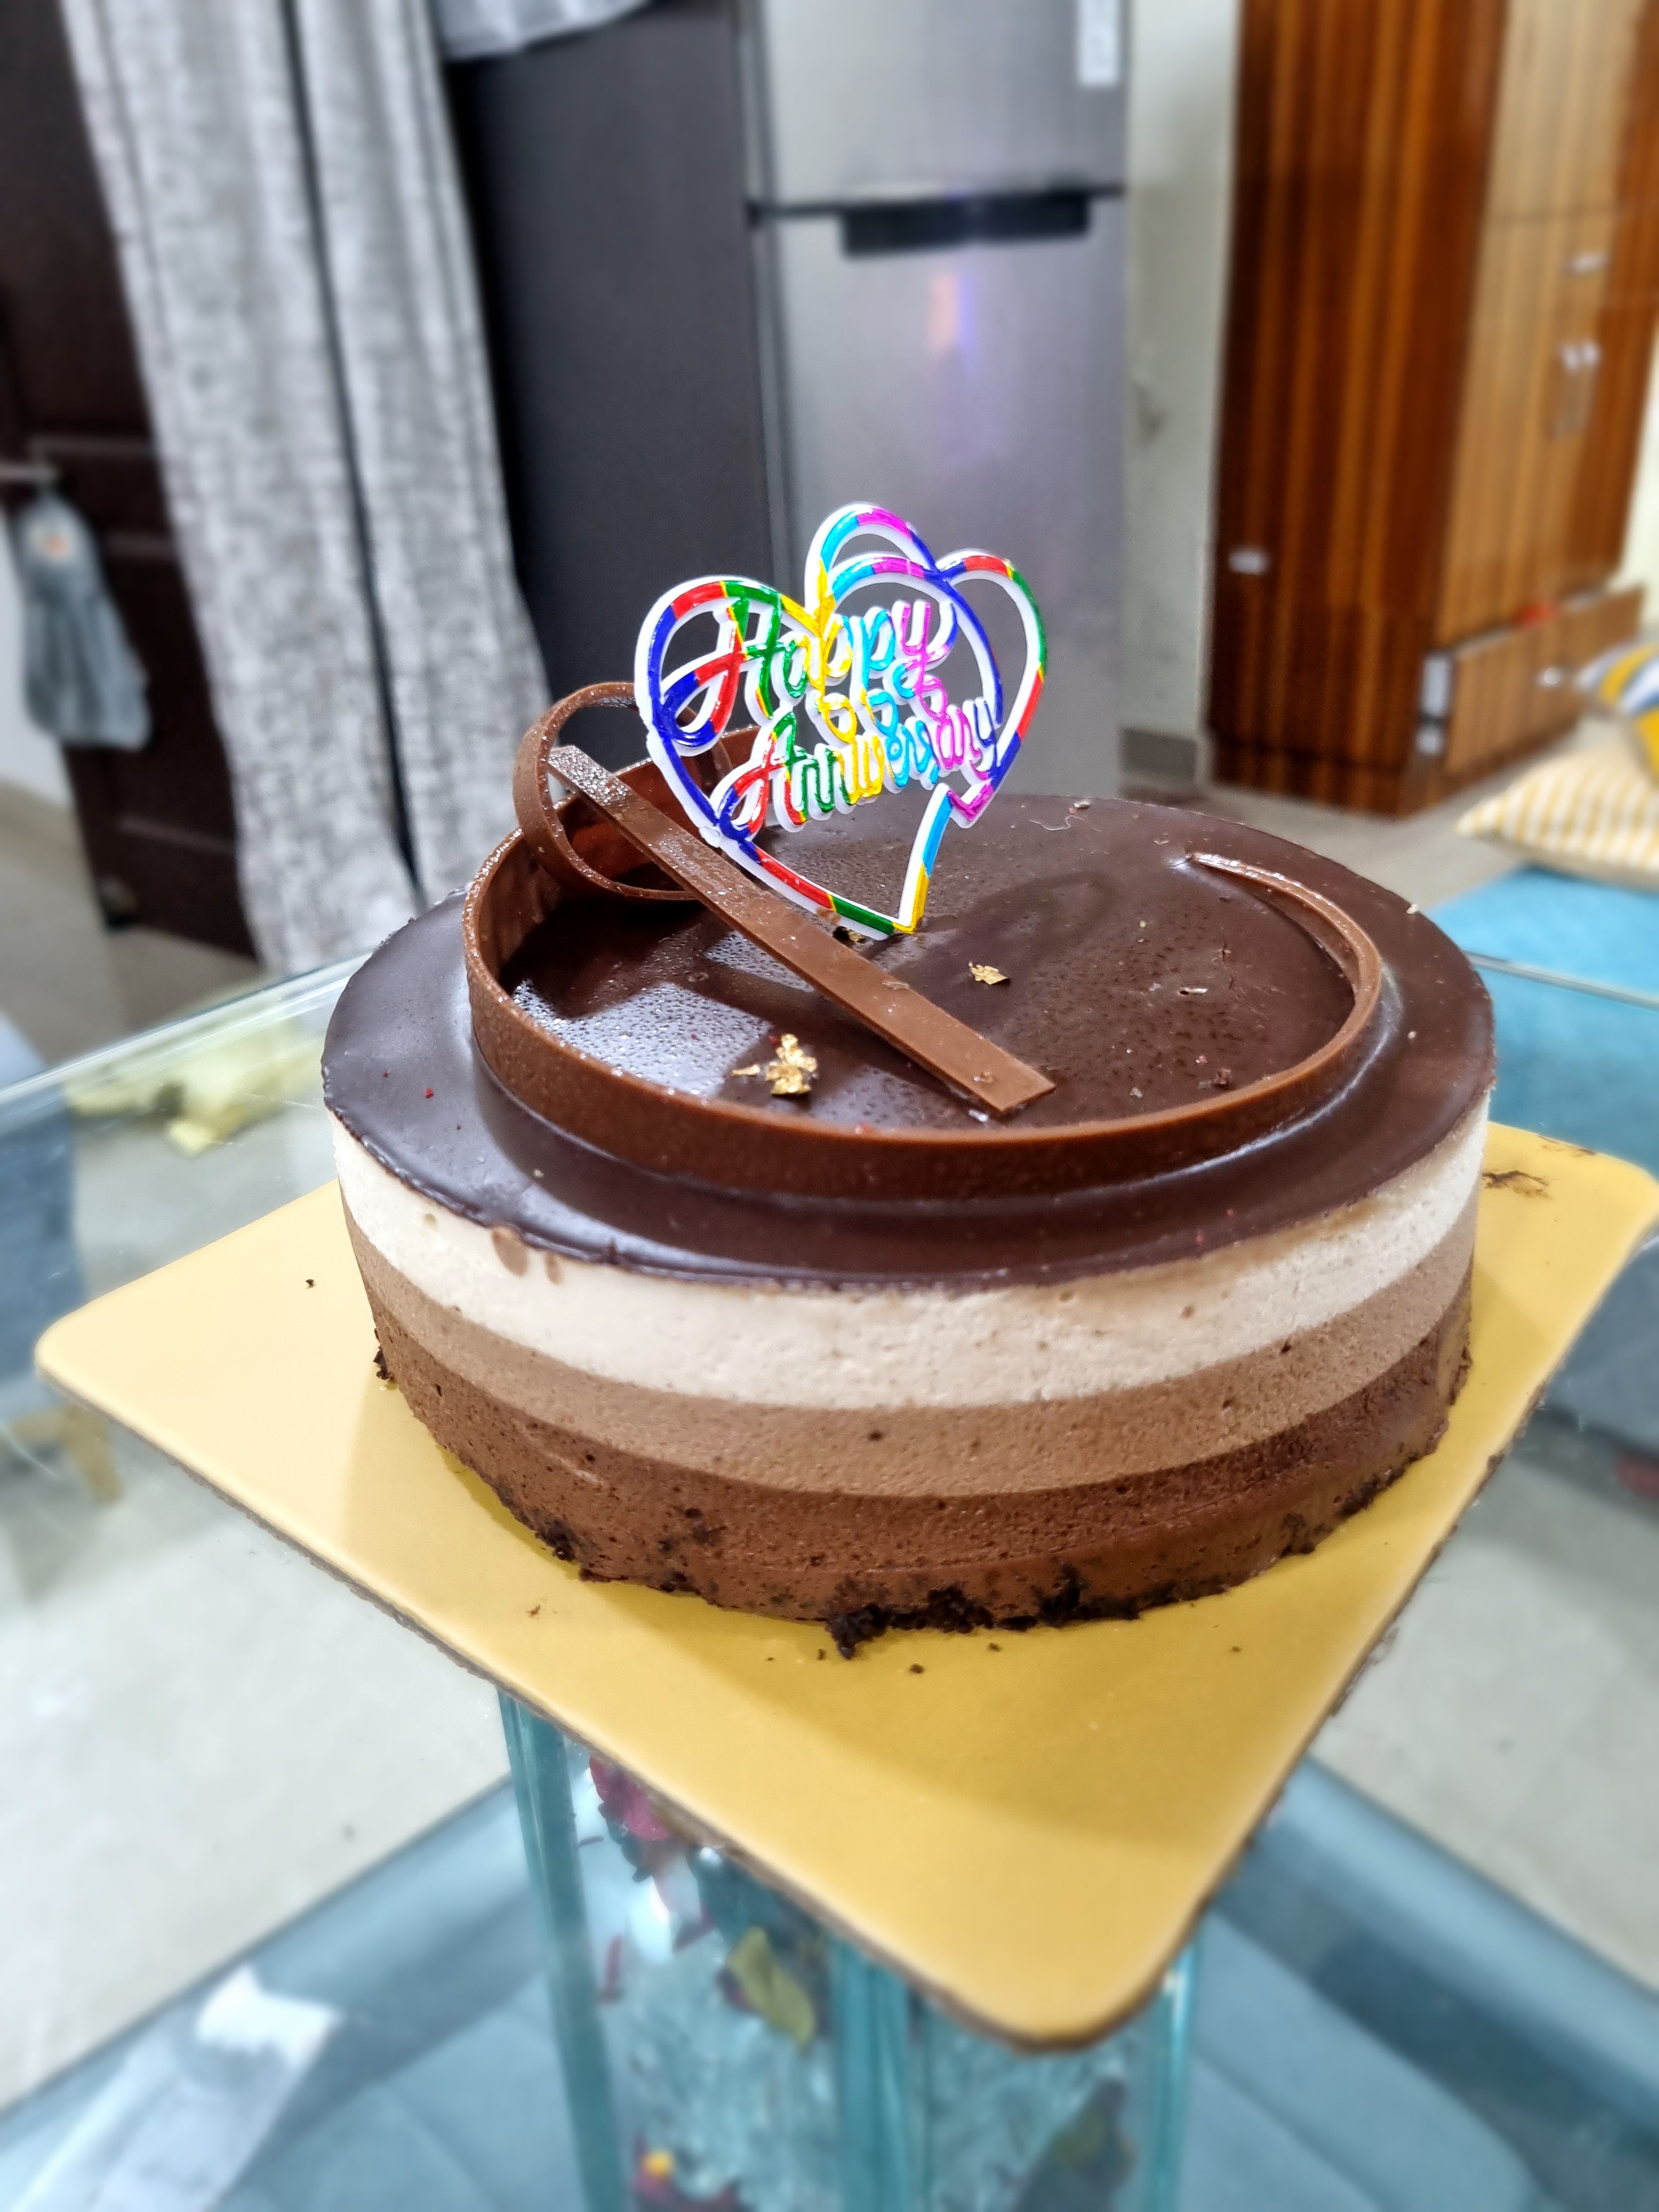 Reviews of Saras Cake Shop, Kandivali West, Mumbai | Zomato